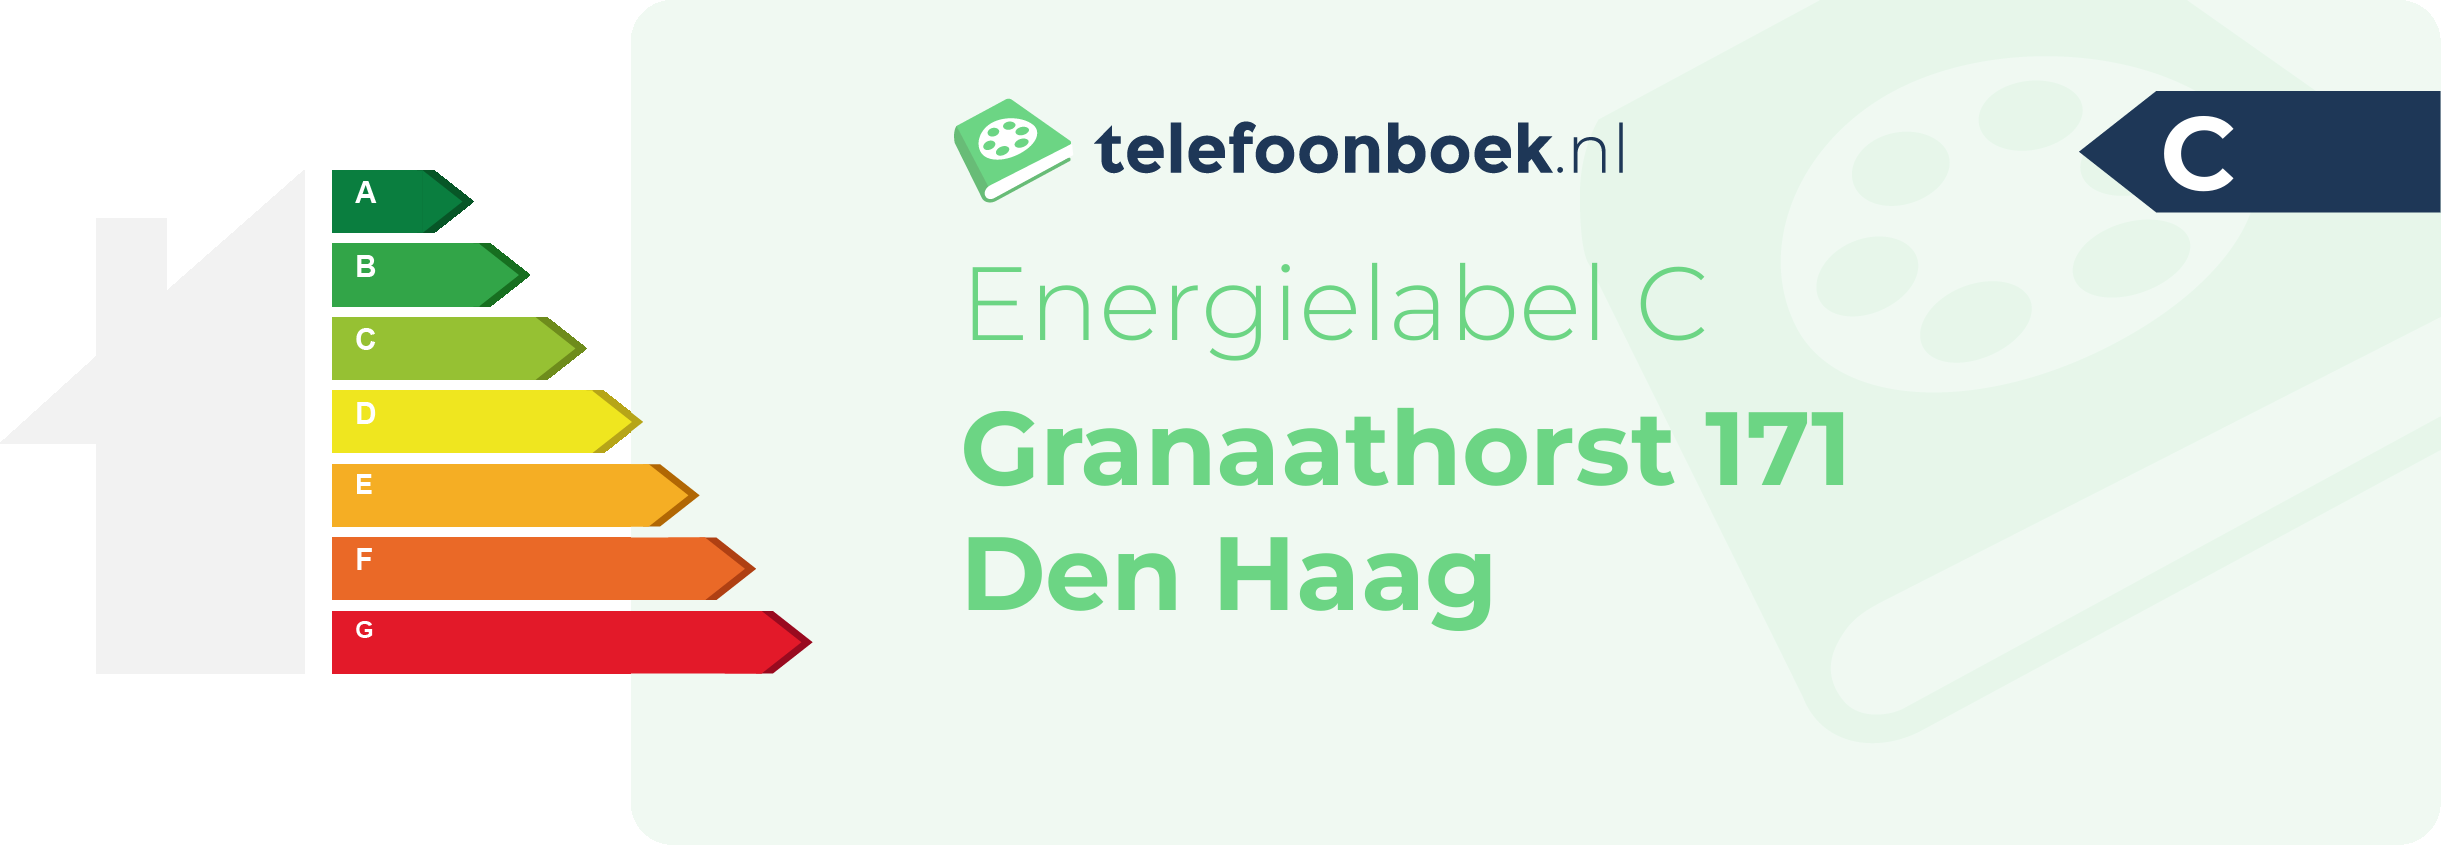 Energielabel Granaathorst 171 Den Haag